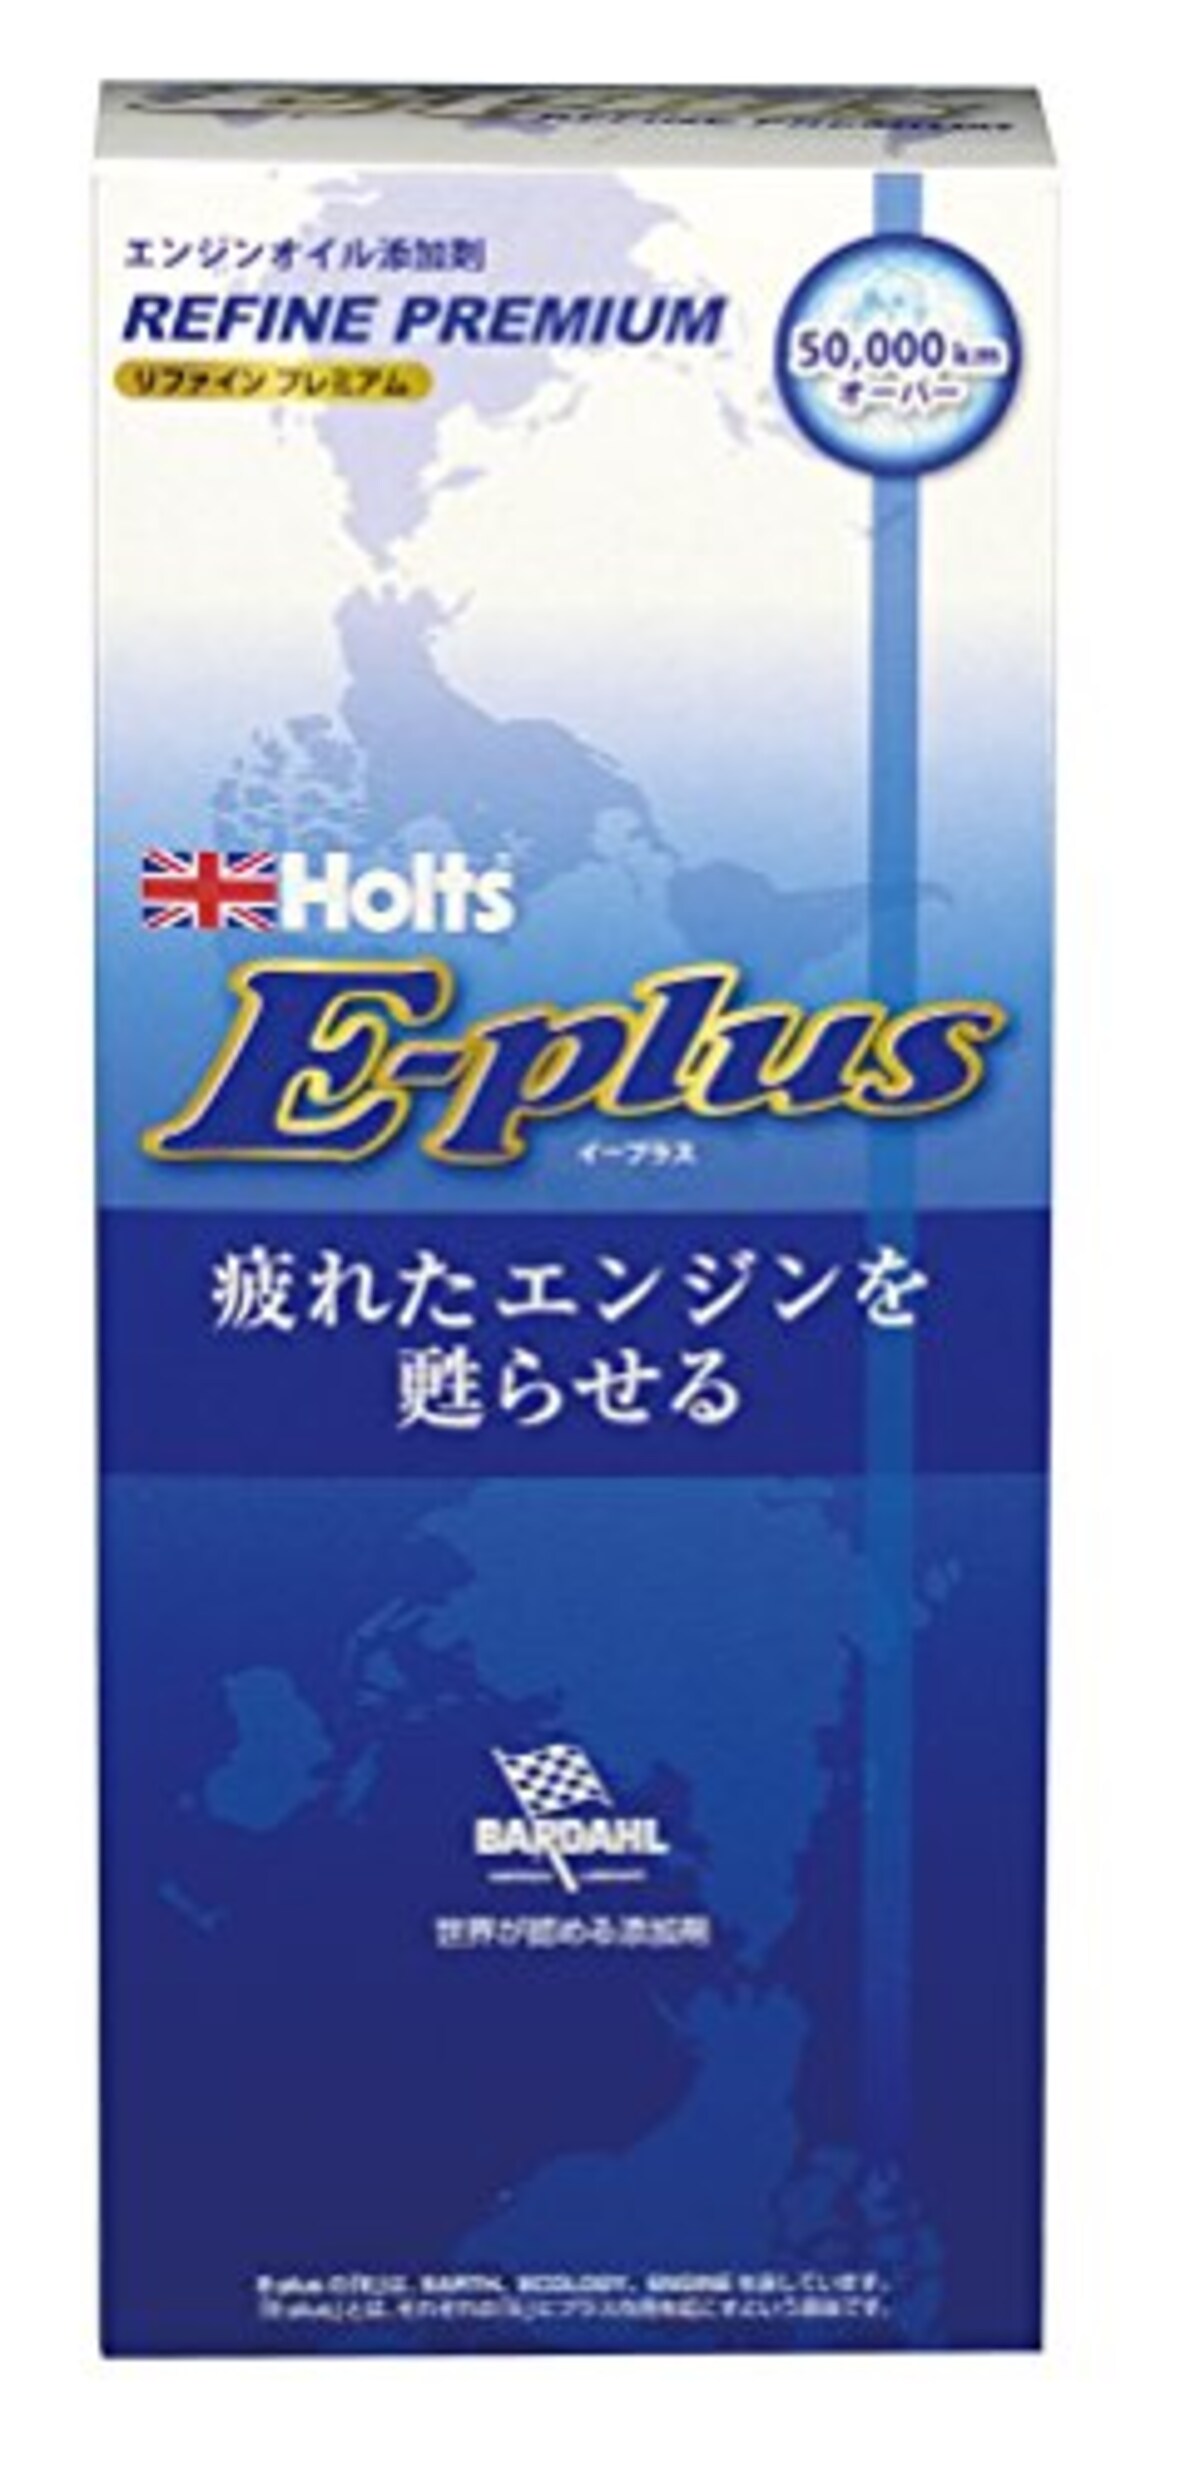 Holts(ホルツ) E-Plus エンジンリファイン プレミアム MH7799